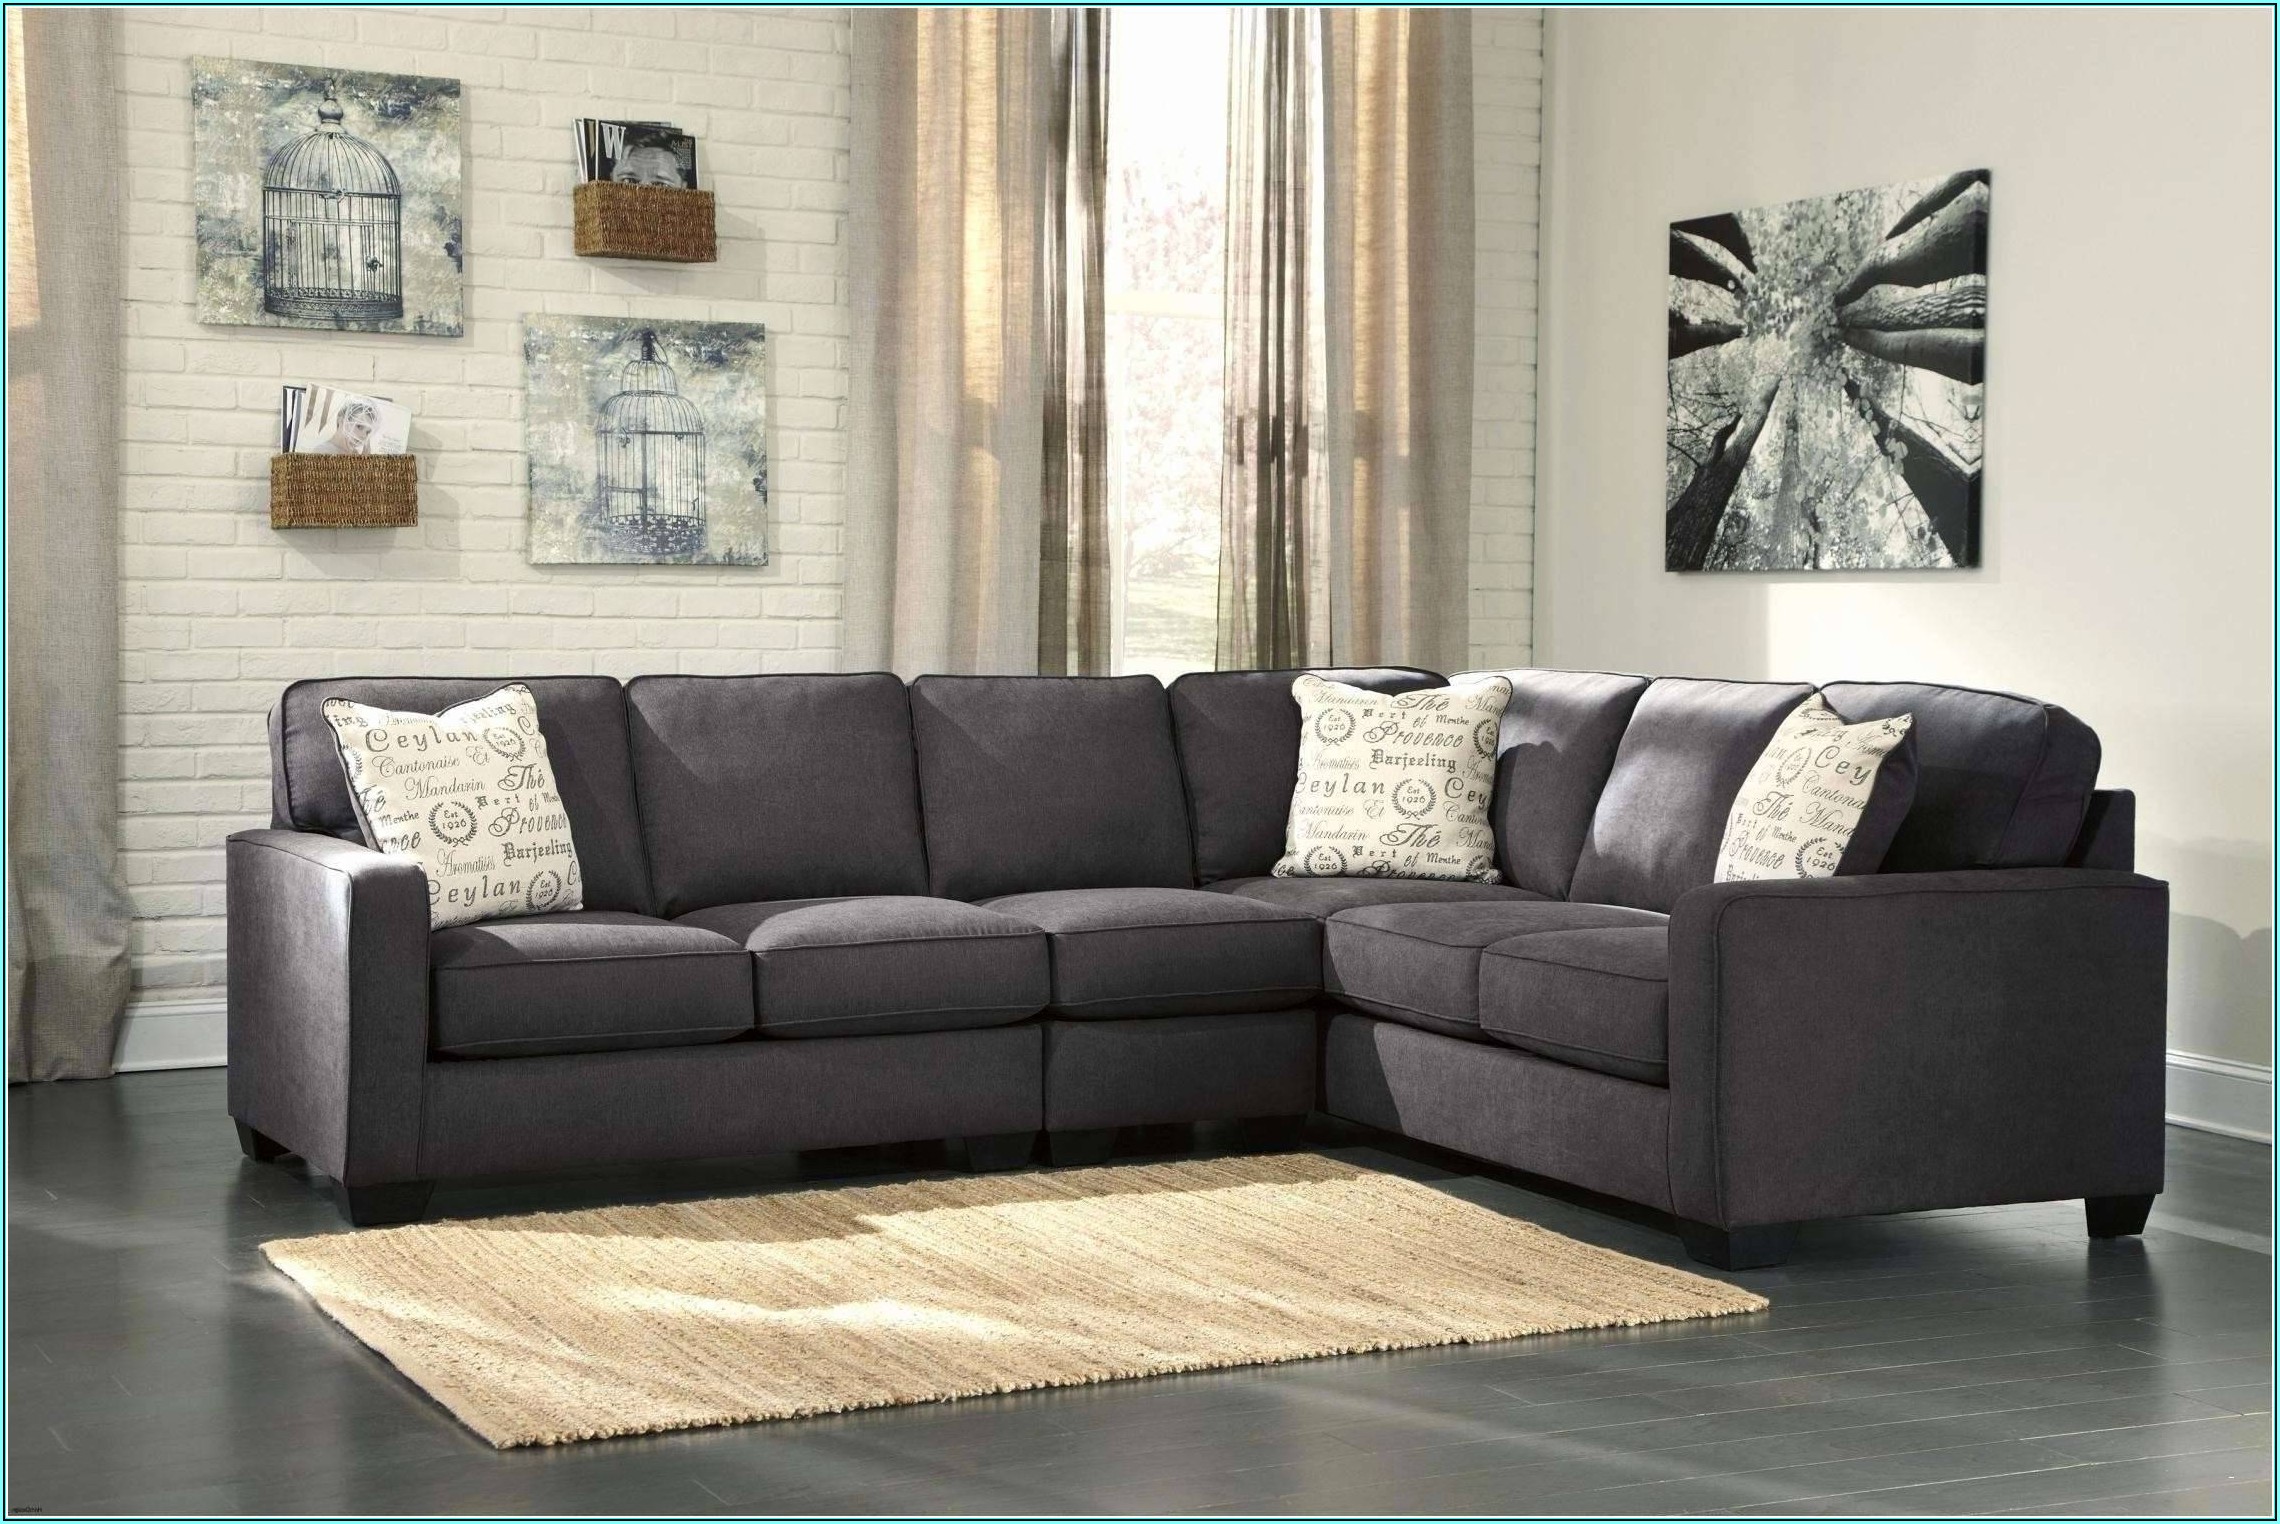 Wohnzimmer Ideen Braune Couch